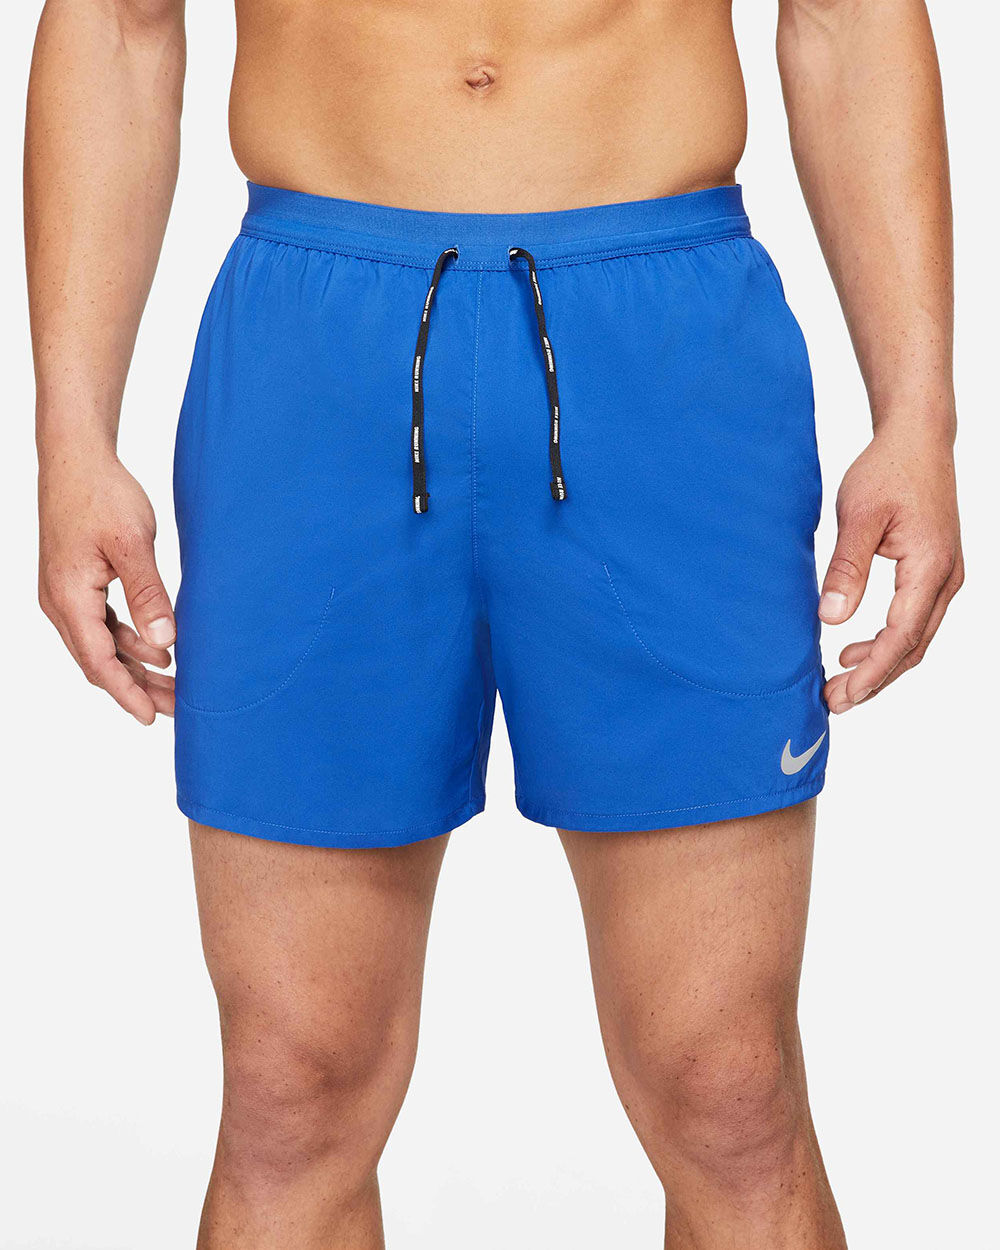 Pantalón corto Nike Flex Stride Azul para Hombre - CJ5453-480